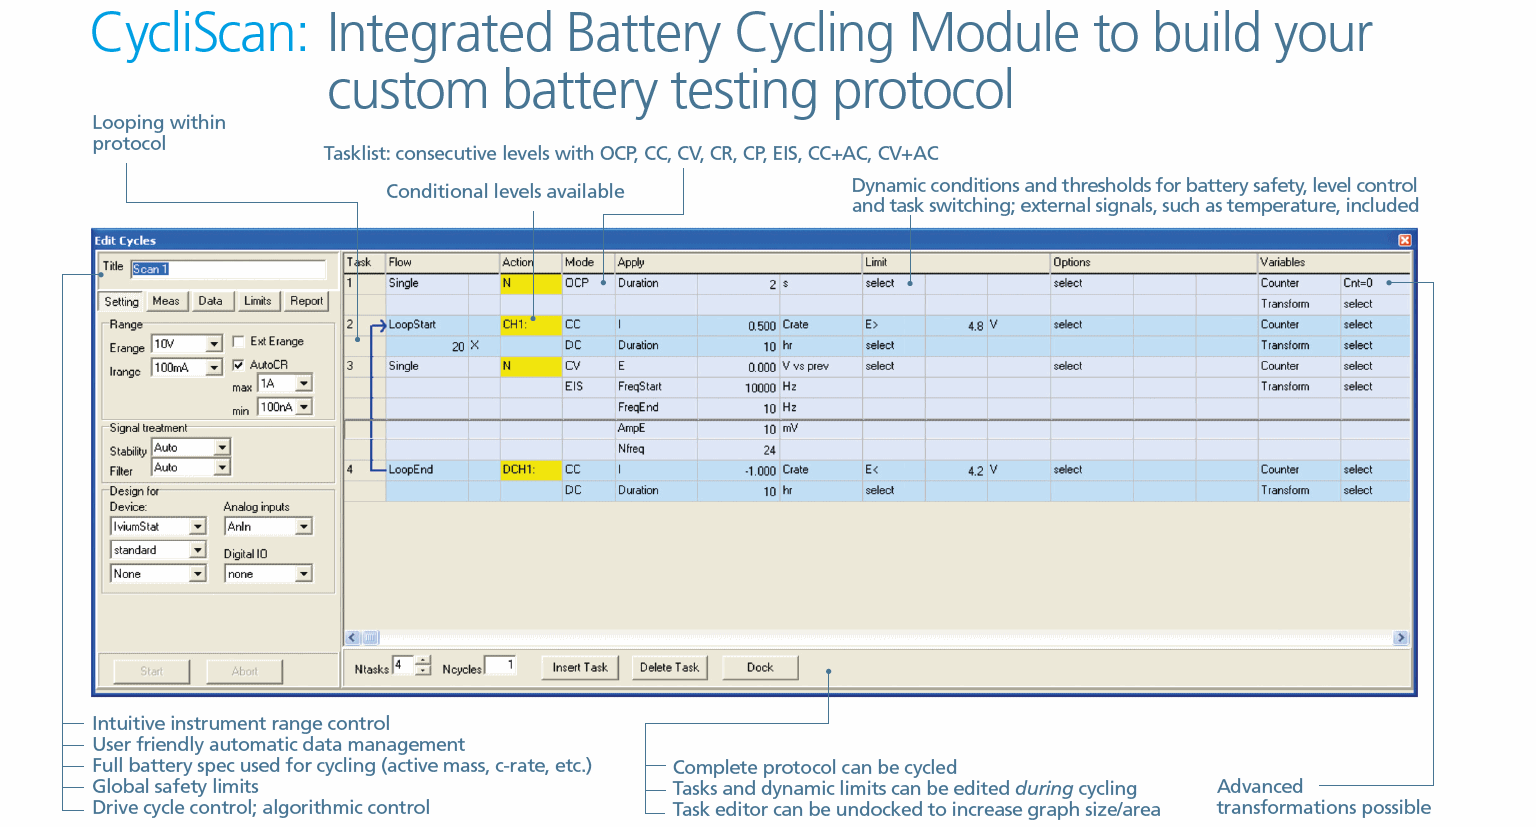 CycliScan: Módulo de ciclo de batería integrado para crear su protocolo de prueba de batería personalizado